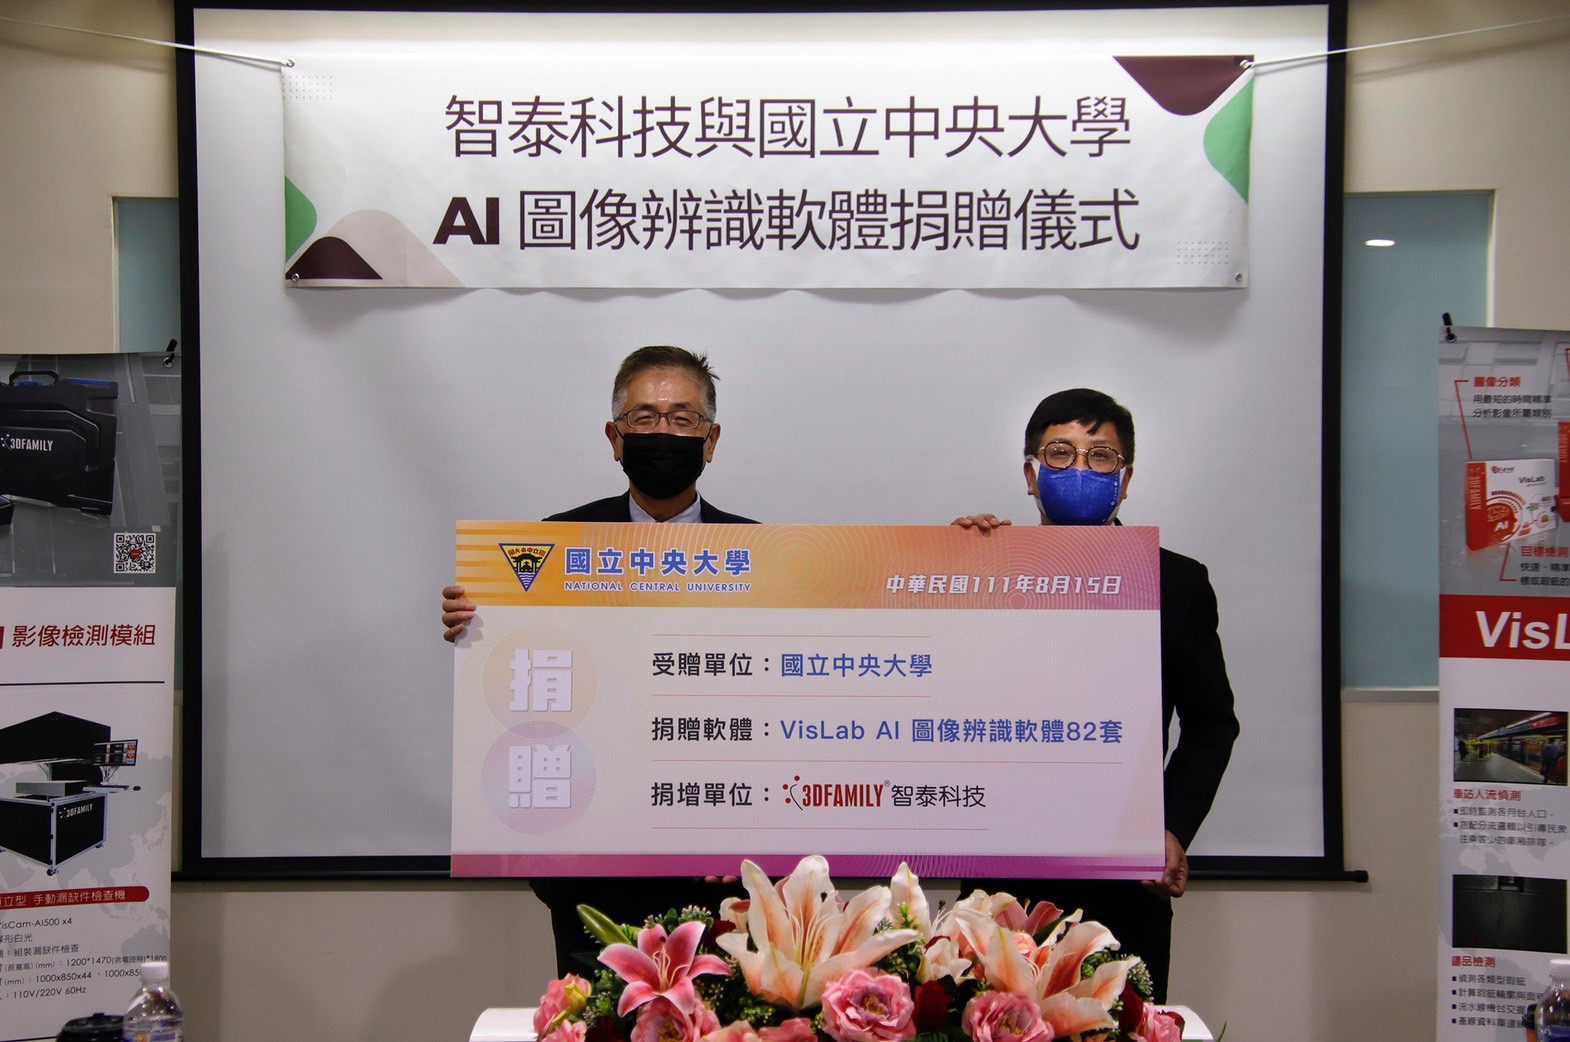 智泰科技董事長許志青(右)捐贈82套AI圖像辨識軟體給中央大學，由中央大學周景揚校長代表受贈(左)。陳如枝攝